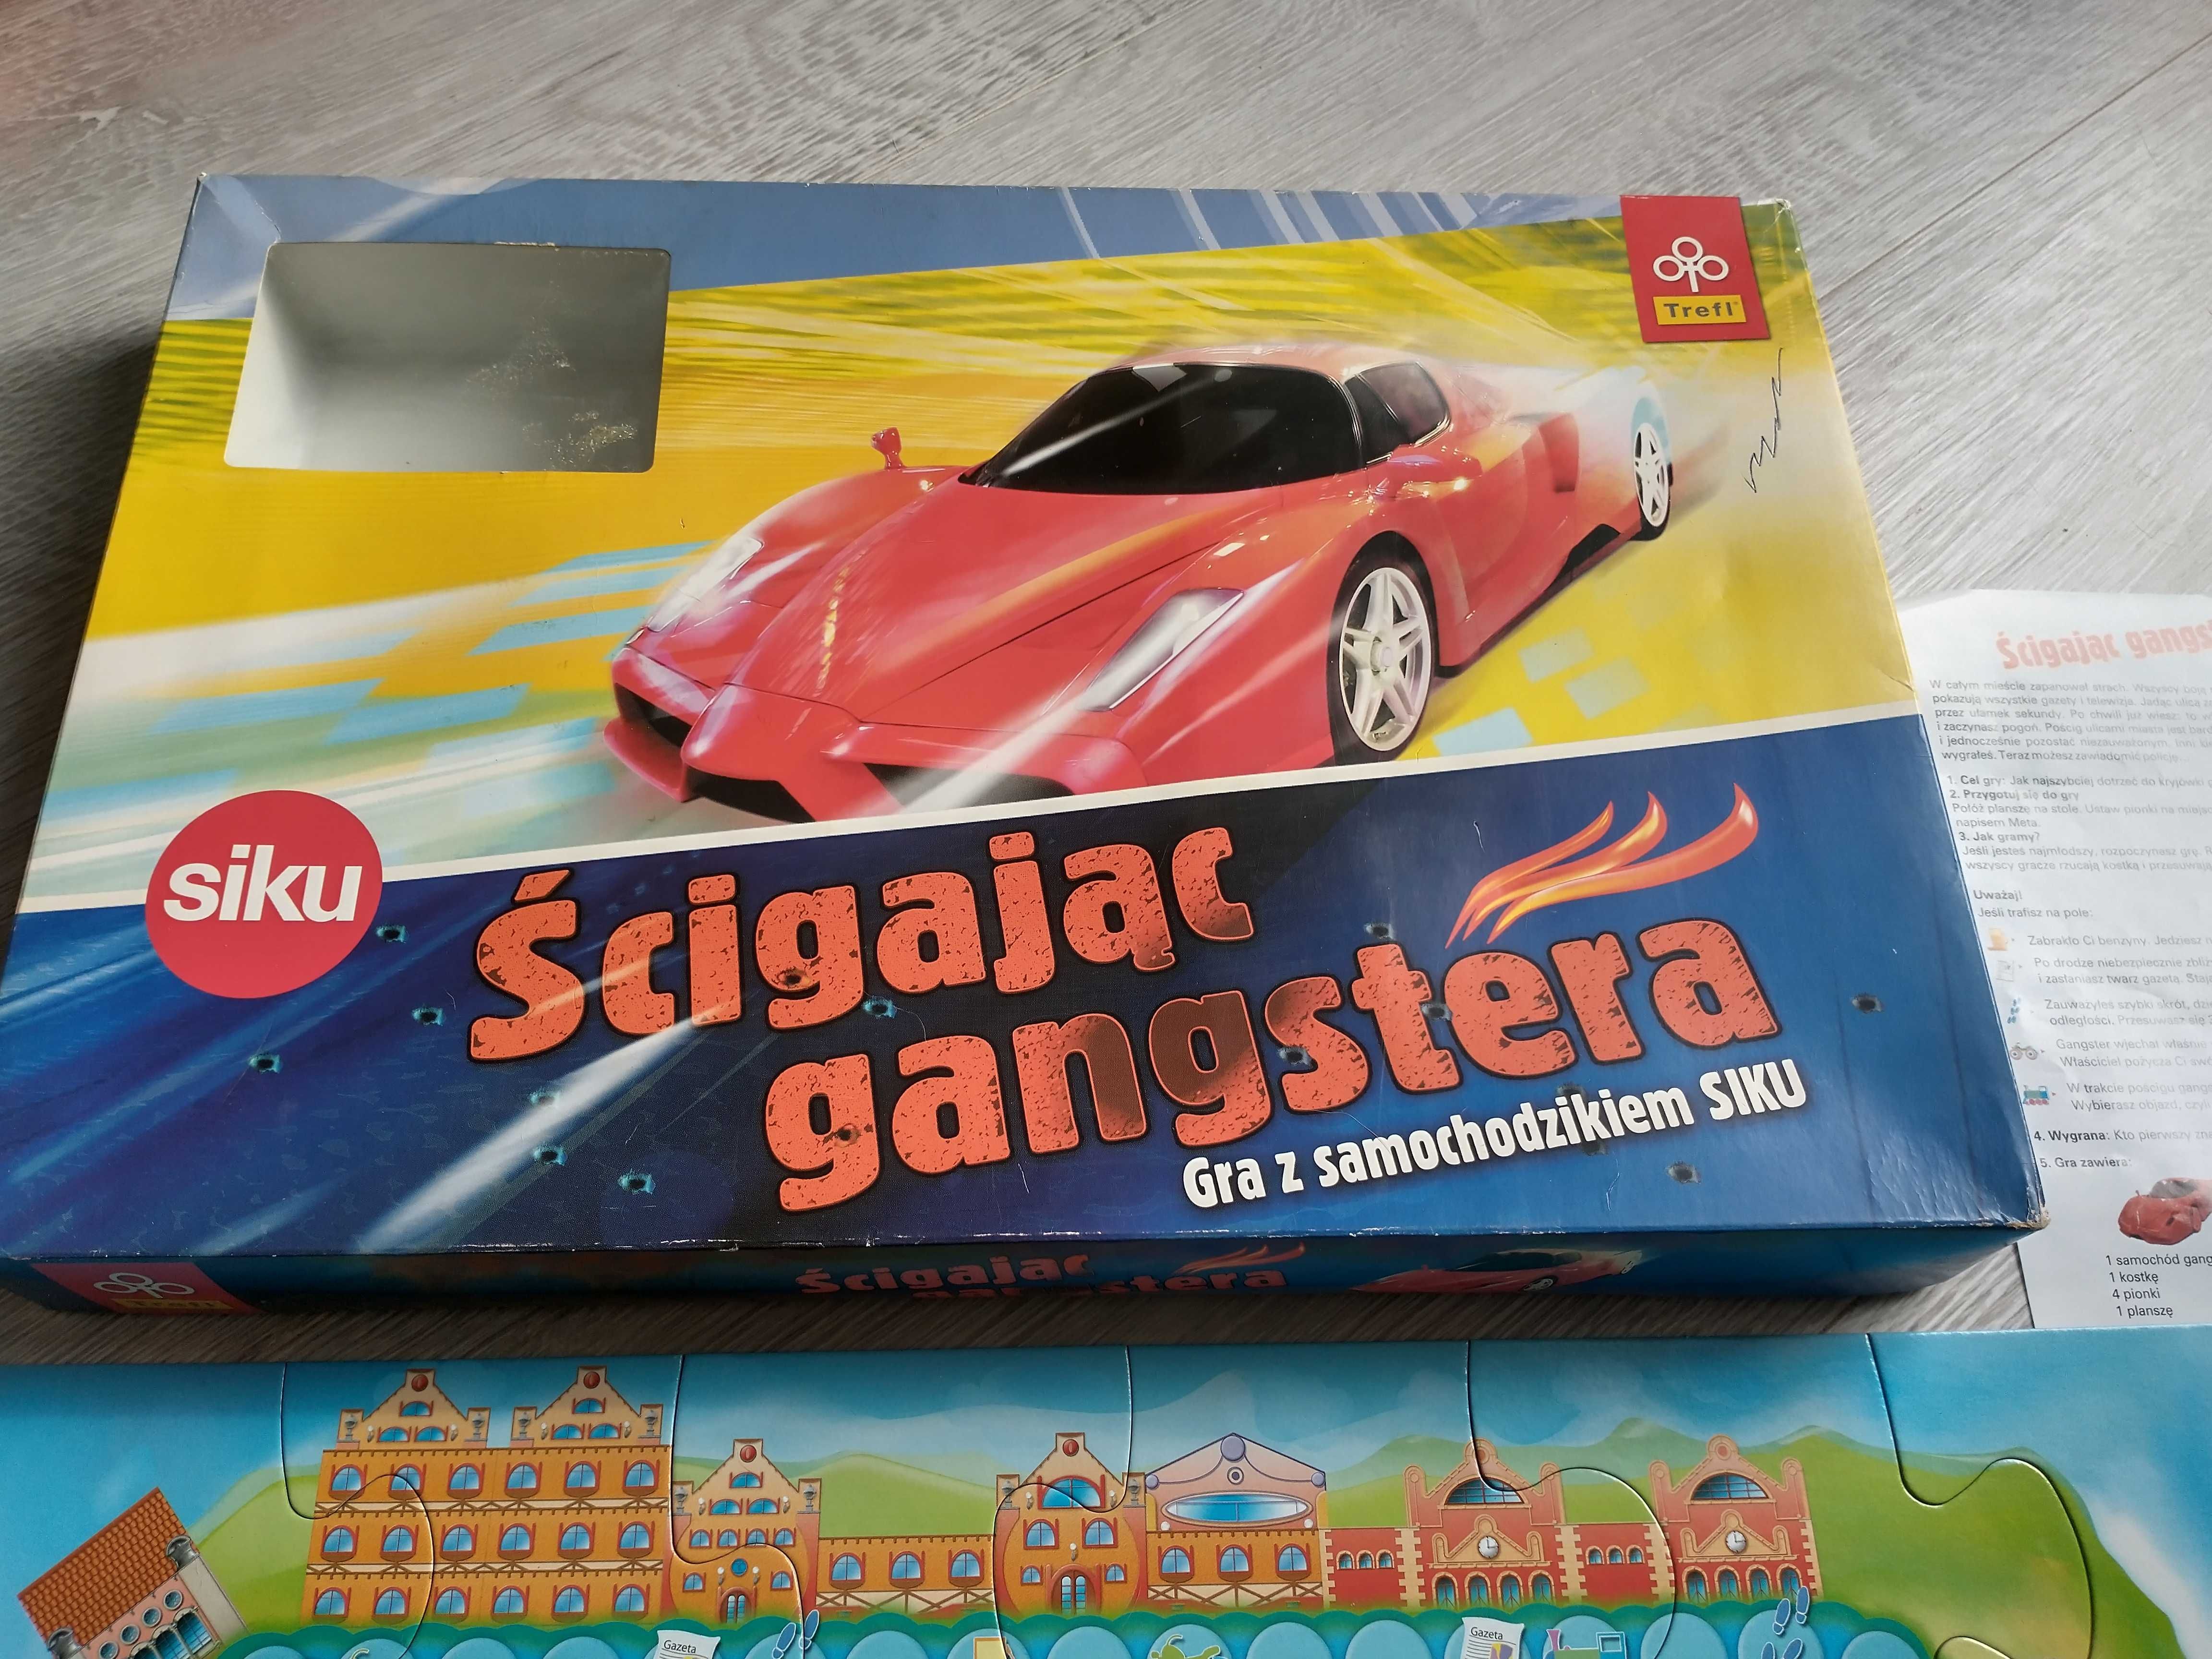 Gra planszowa – Ścigając gangstera (samochodzik siku)